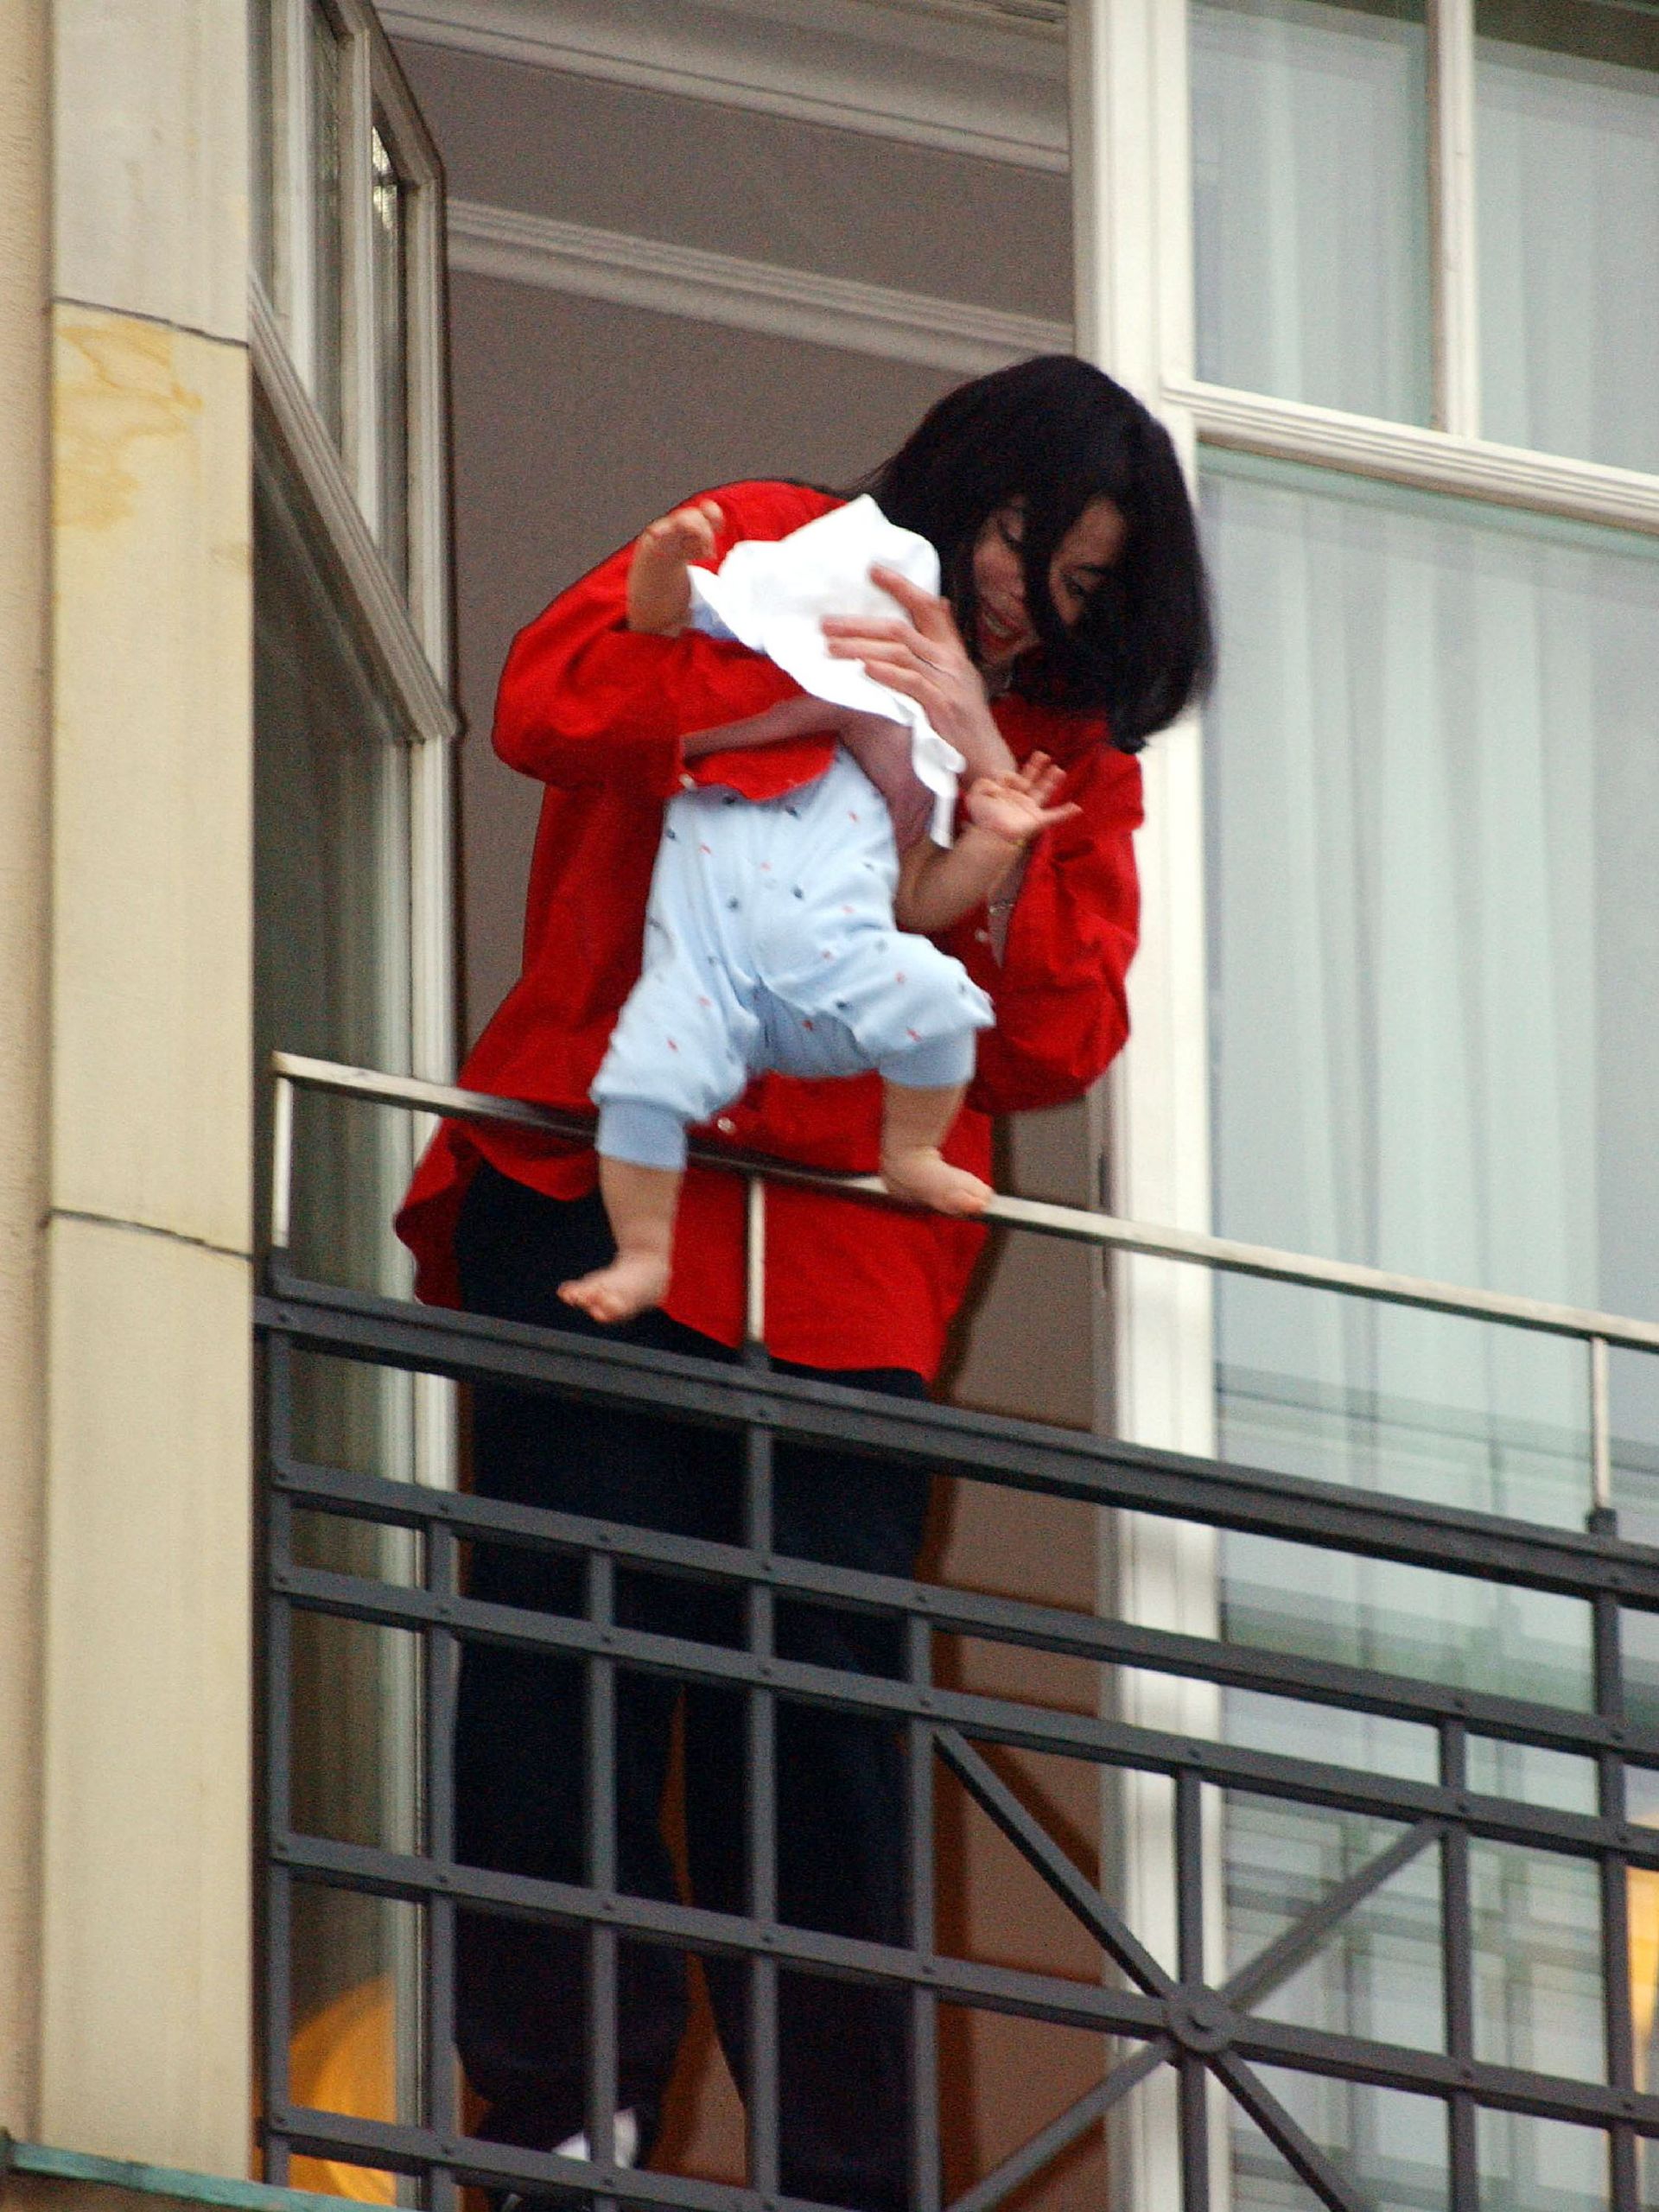 Майкъл предизвика скандал, показвайки сина си Принс Джексън II - Бланкет, през парапета на балкон